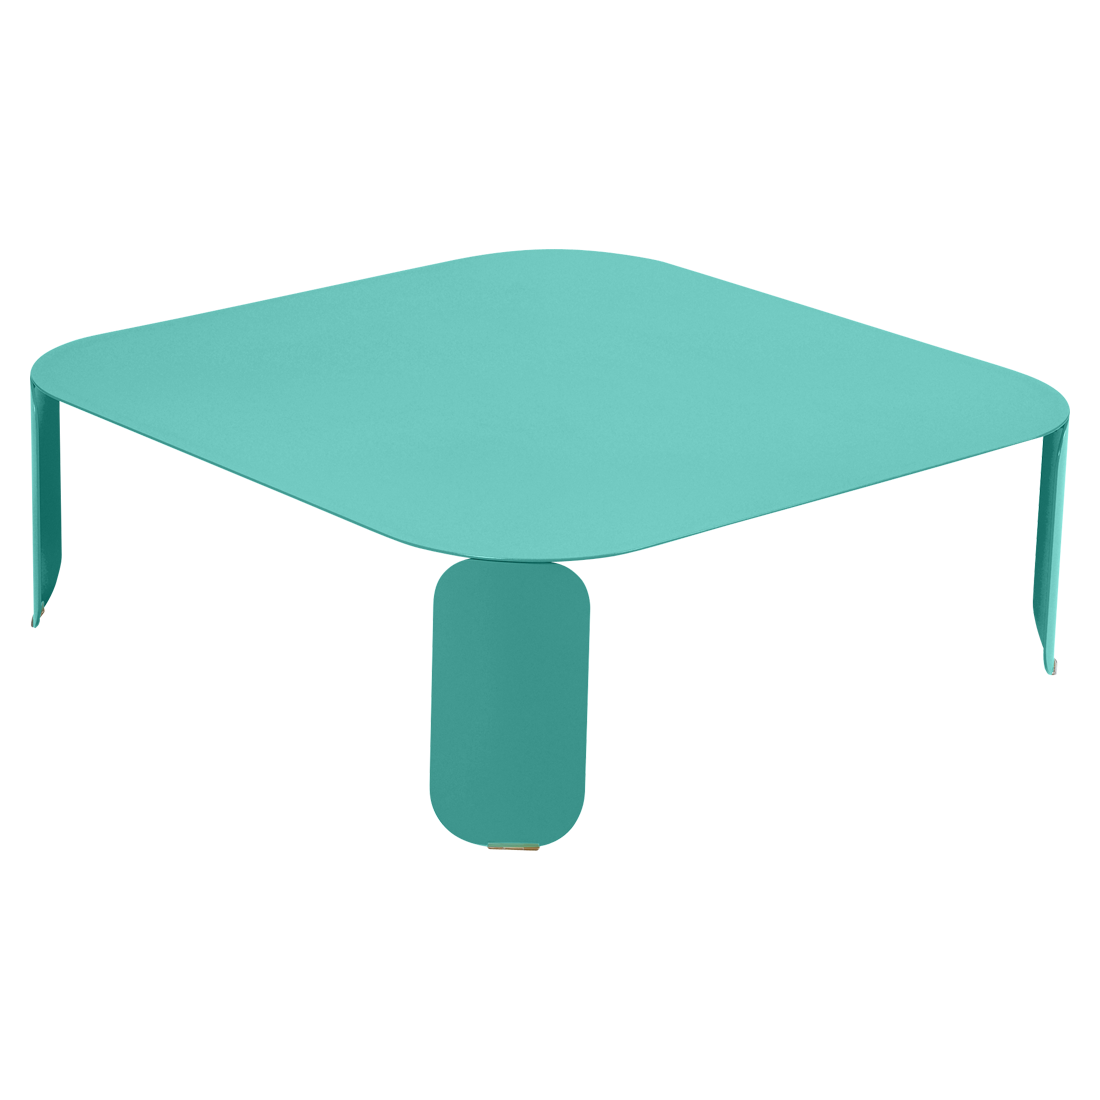 Низкий стол 90x90 см (высота 29 см)- BEBOP - Яркие цвета